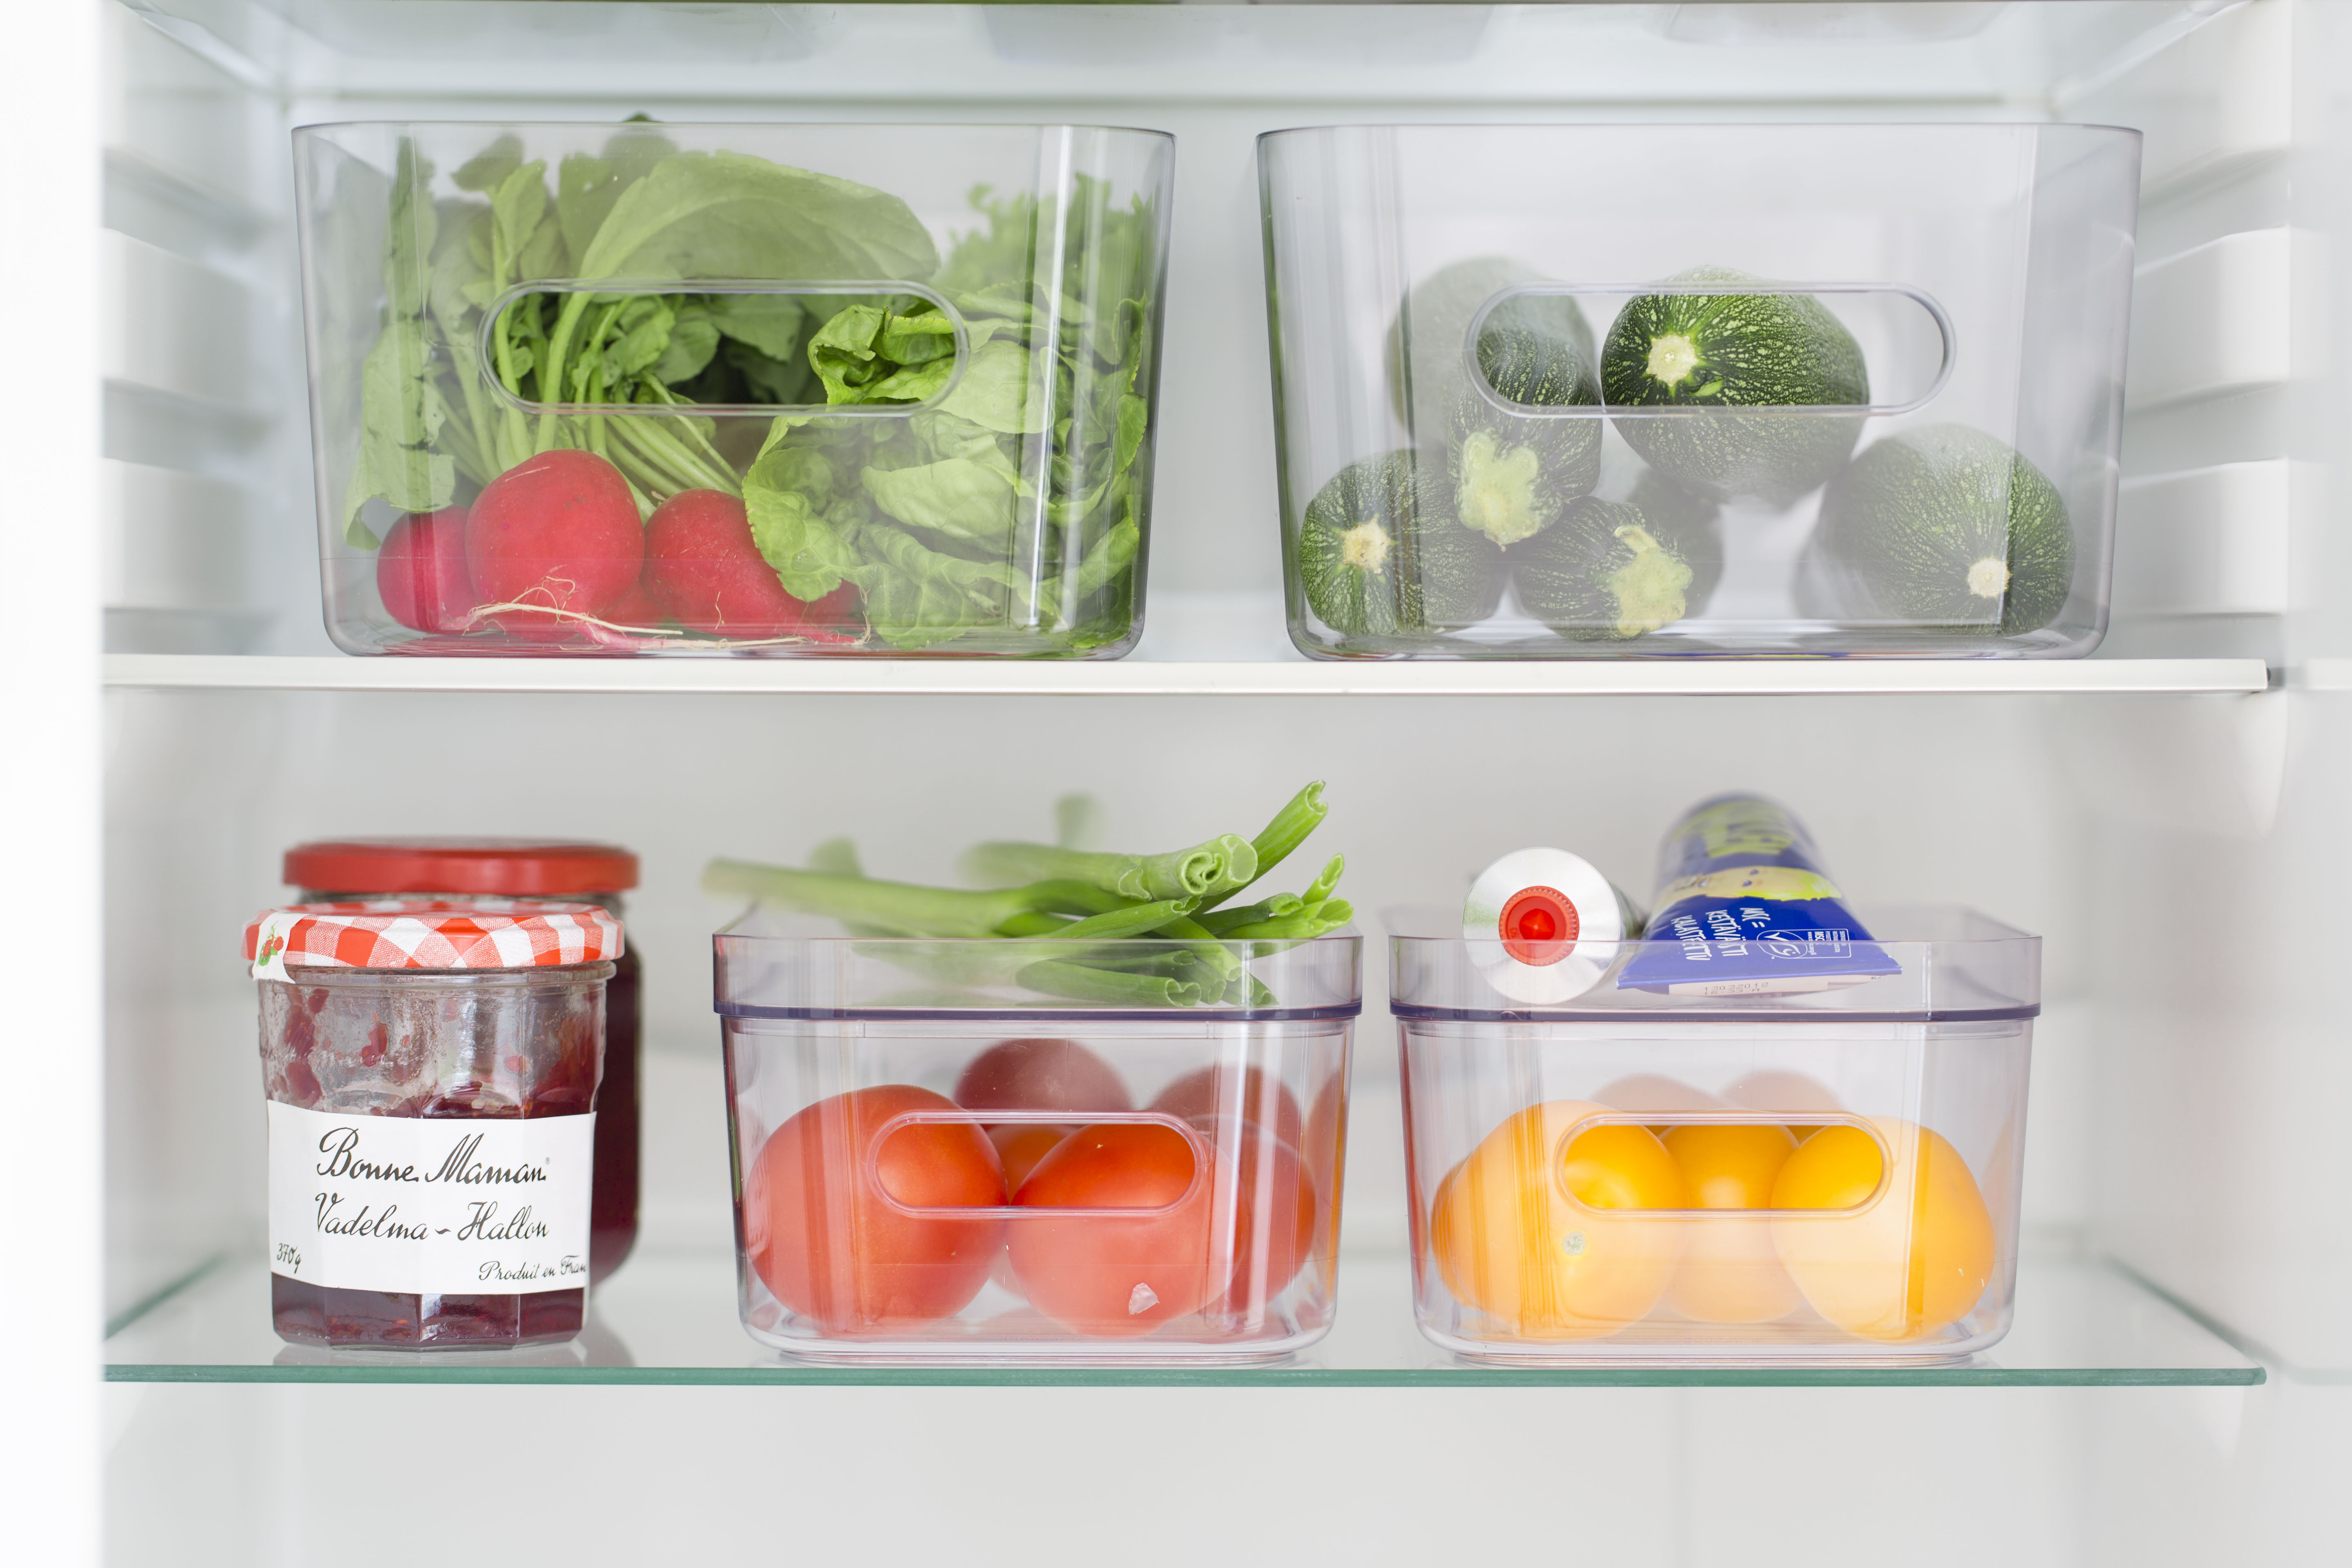 Organisera och sortera i kylskåpet